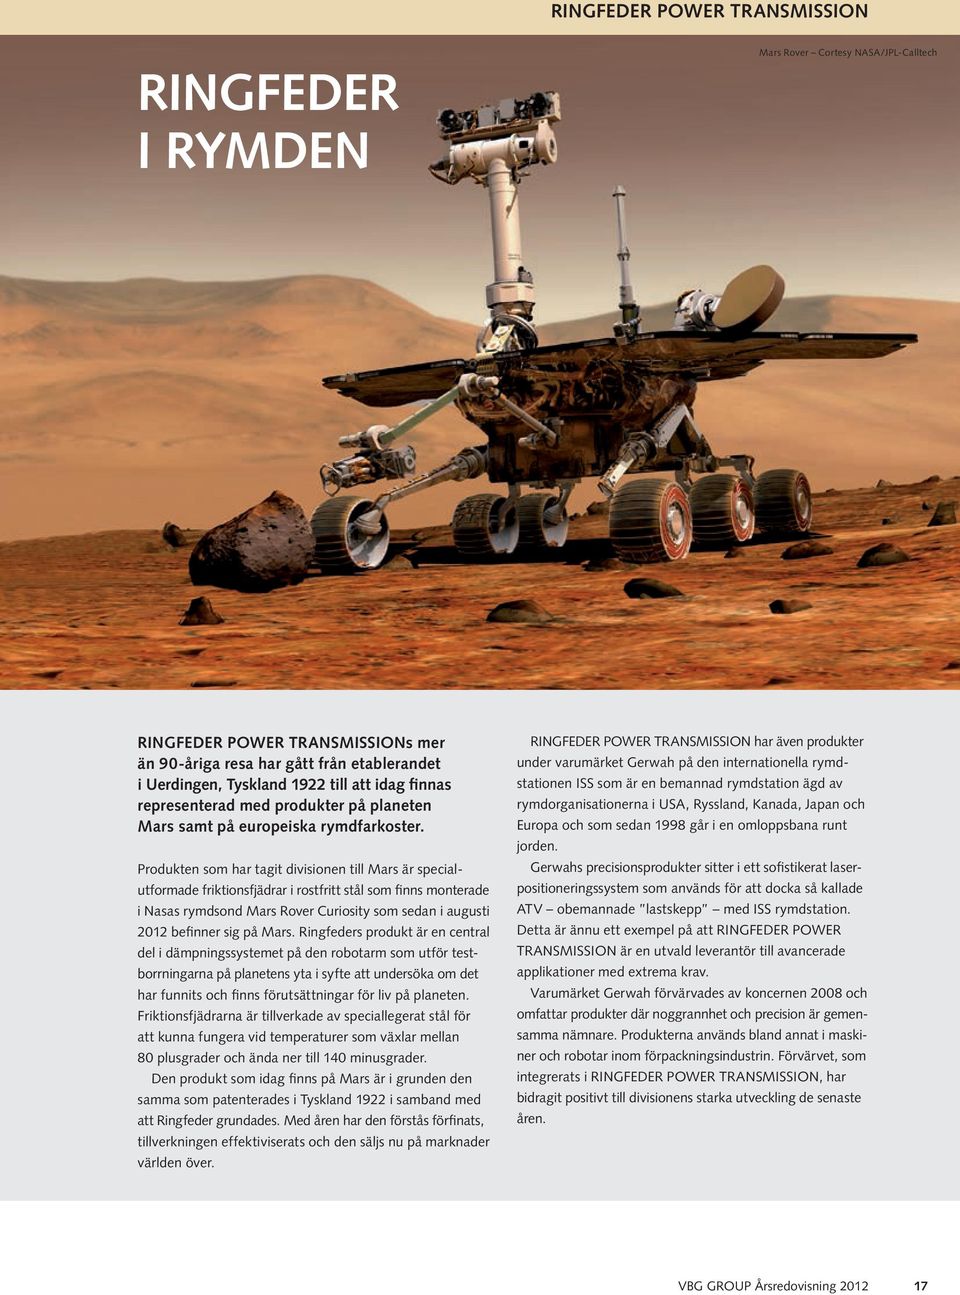 Produkten som har tagit divisionen till Mars är specialutformade friktionsfjädrar i rostfritt stål som finns monterade i Nasas rymdsond Mars Rover Curiosity som sedan i augusti 2012 befinner sig på